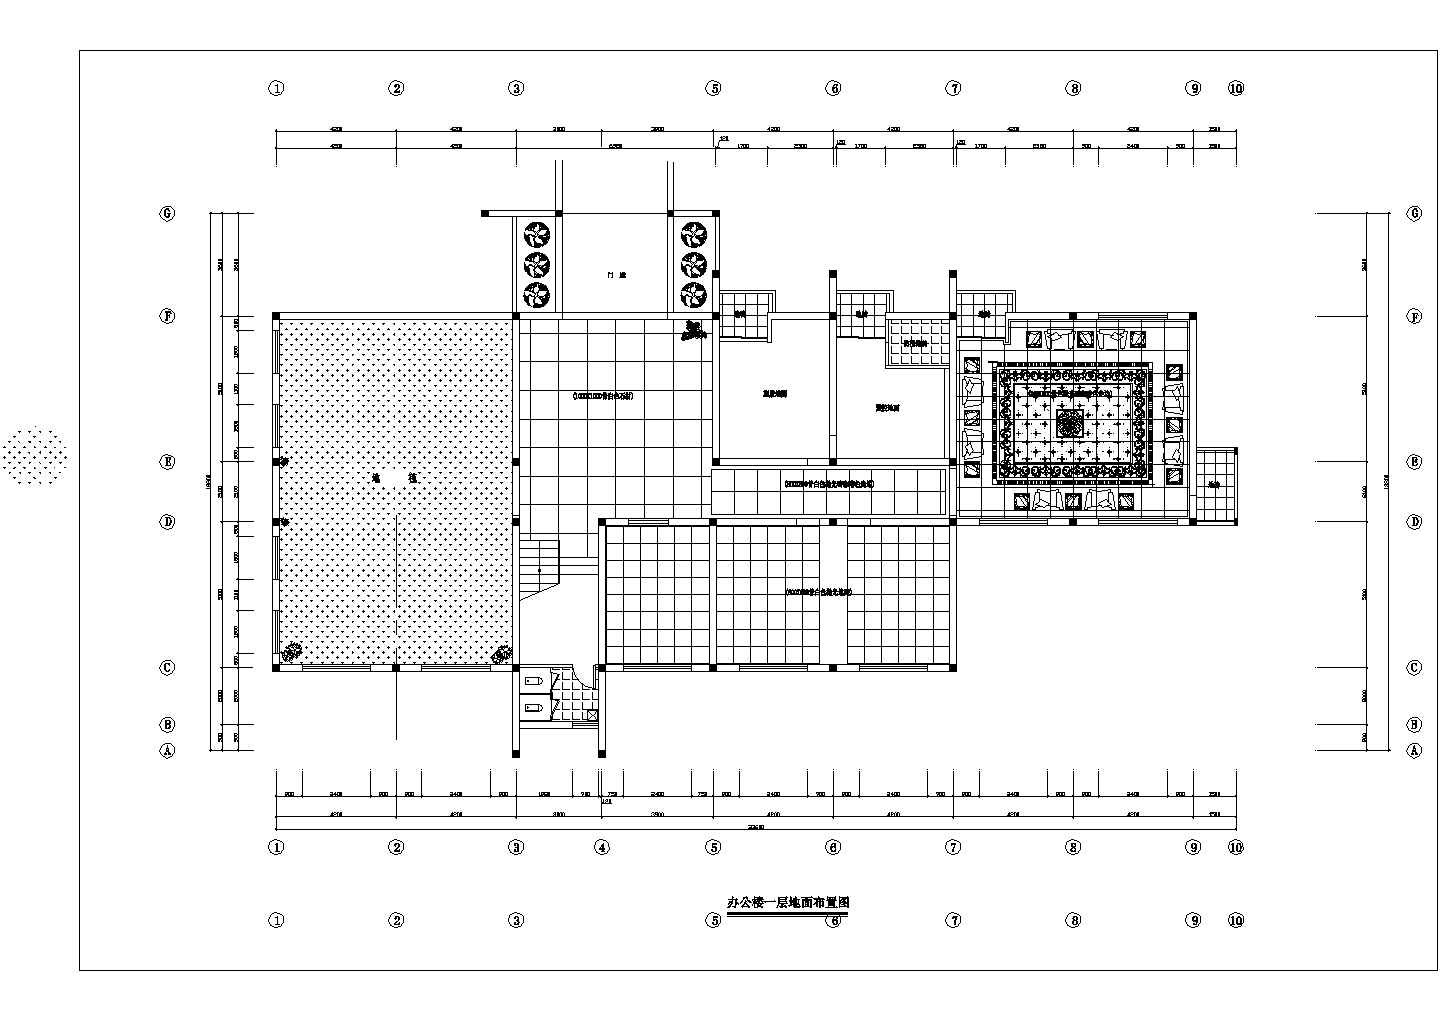 行政机构三层办公楼全套室内装修设计cad施工平面布置方案图